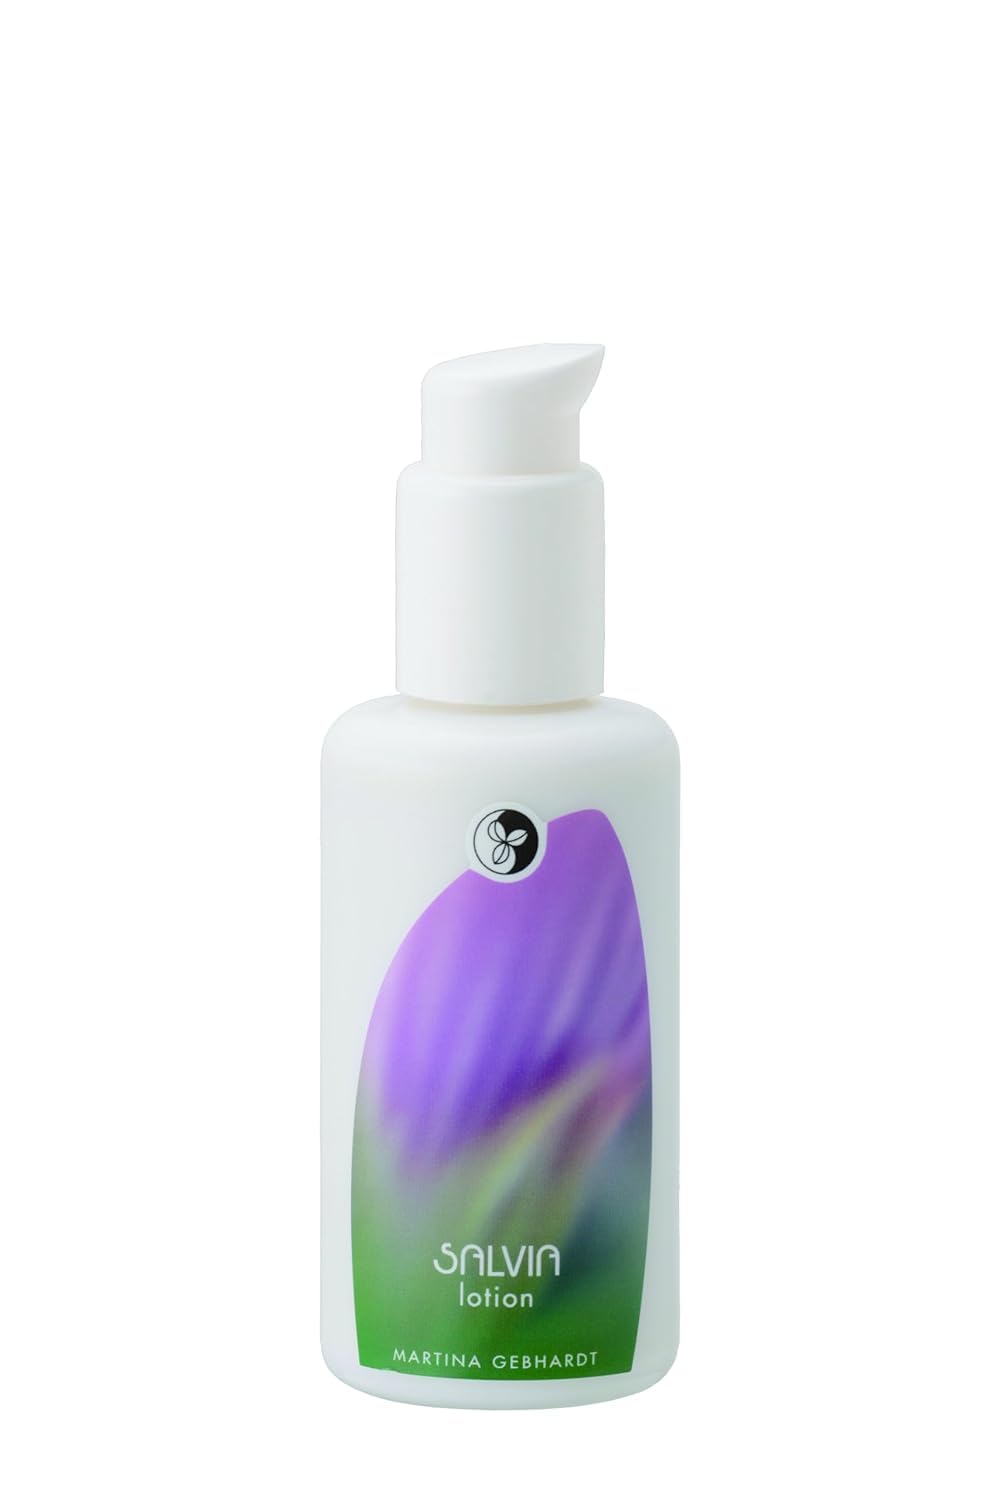 Martina Gebhardt Naturkosmetik Salvia Face Lotion | Enthält Hochwertige Bio-Öle wie Olivenöl, Mandelöl & Sheabutter | Demeter |Sehr feuchtigkeitsspendend | 2 x 100 ml